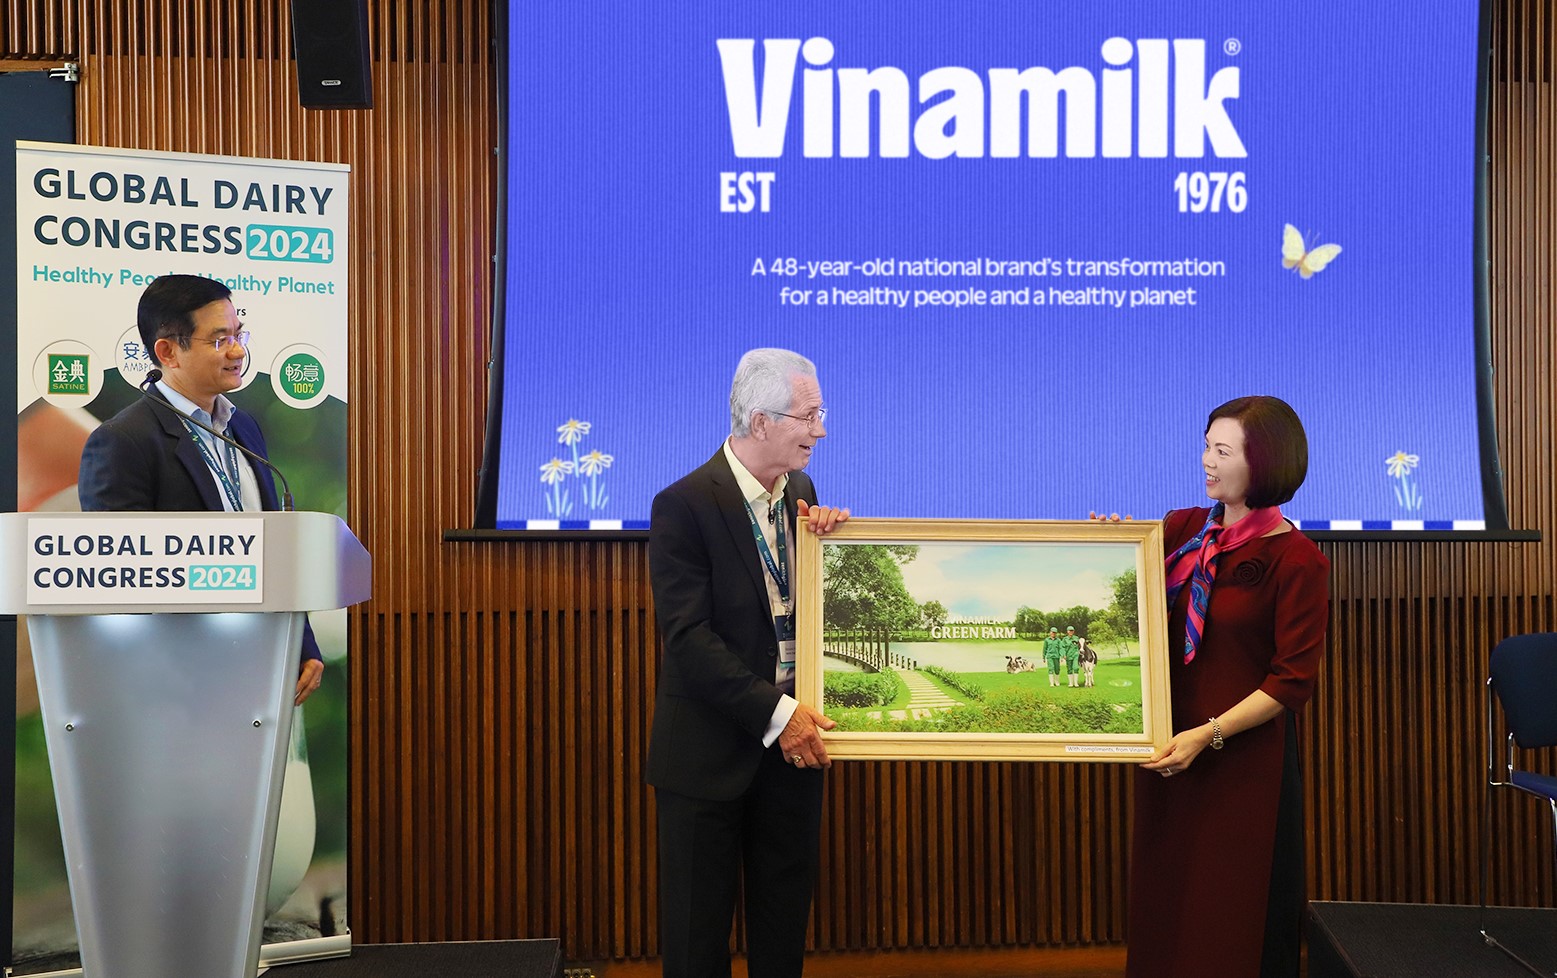 Chiến lược đổi mới và phát triển bền vững của Vinamilk - điểm nhấn tại Hội nghị Sữa toàn cầu- Ảnh 4.